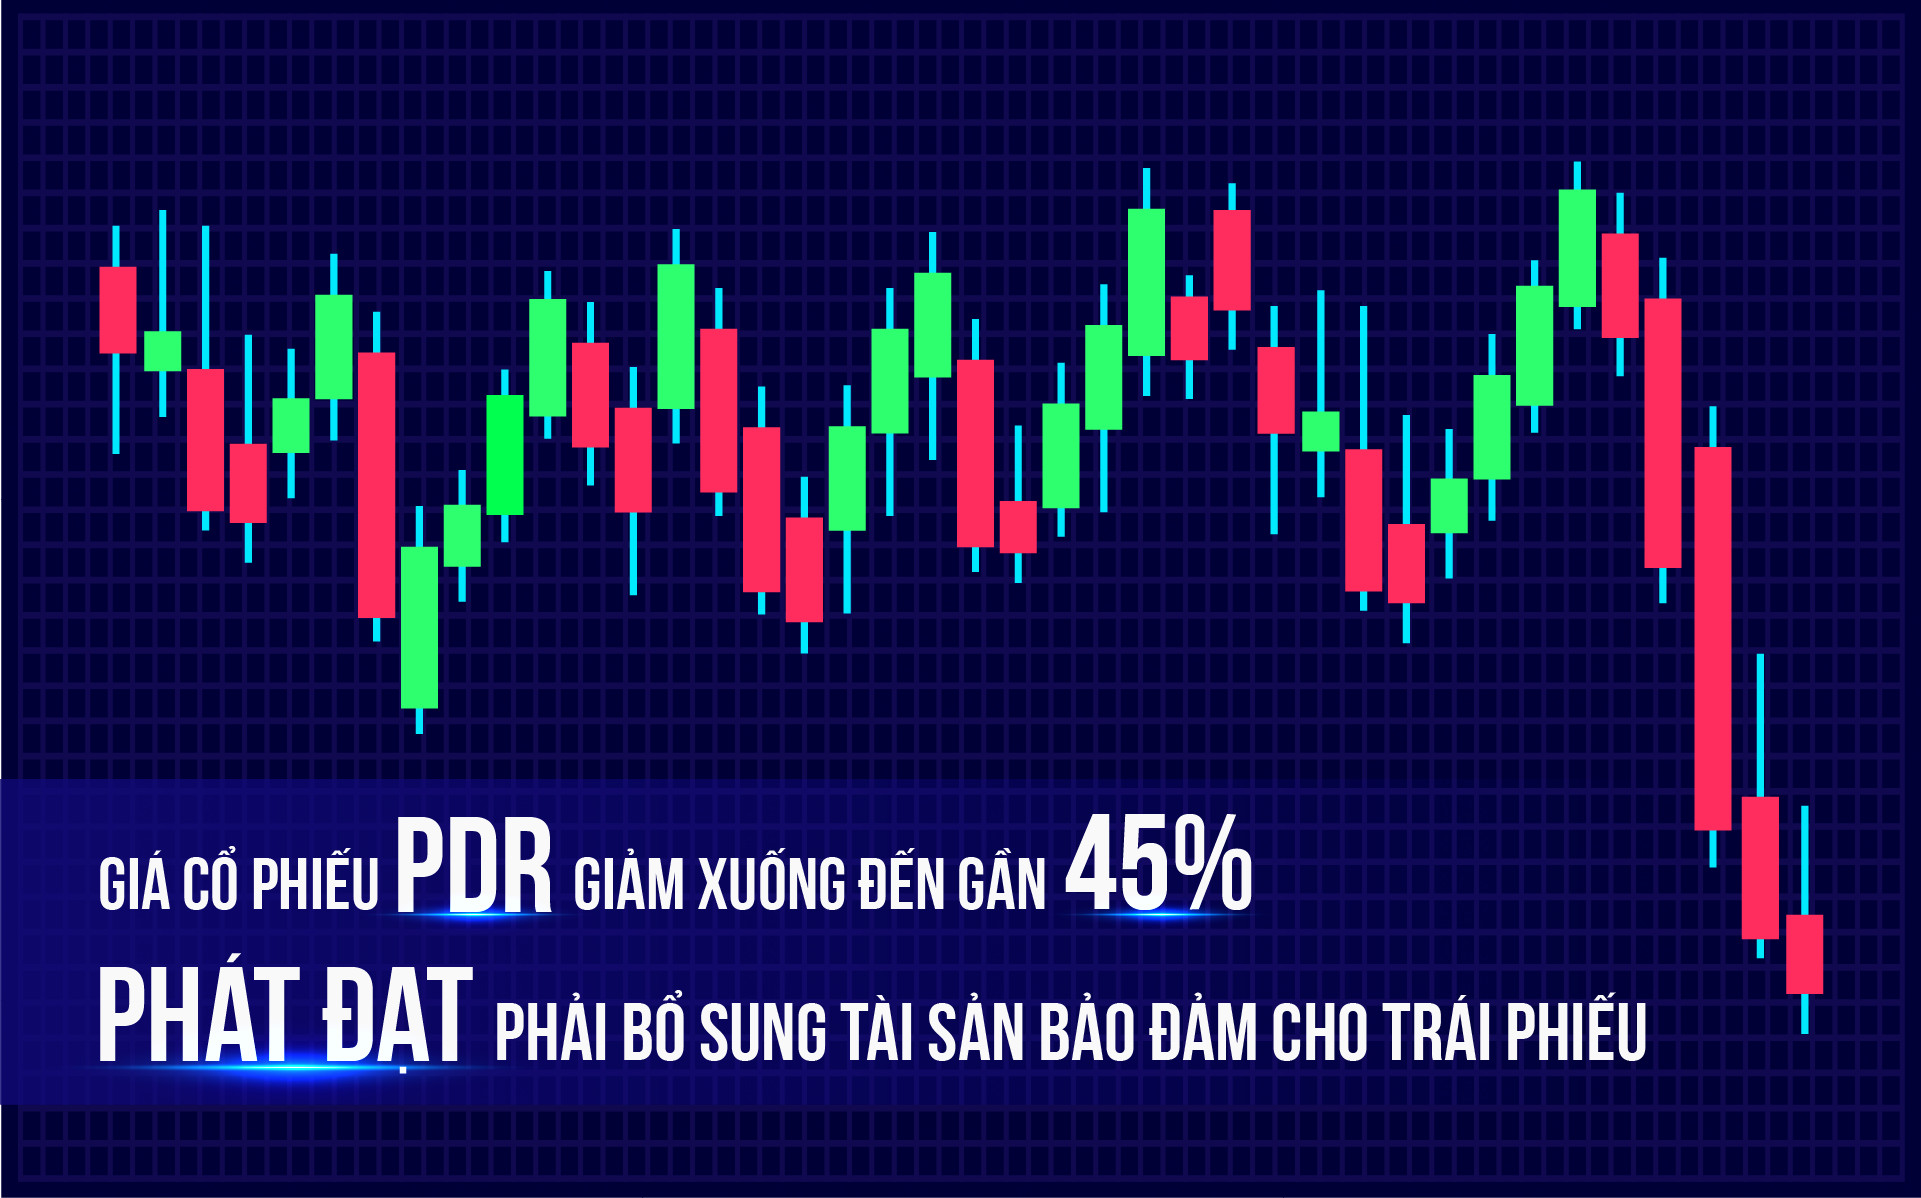 Giá cổ phiếu PDR giảm xuống đến gần 45%, Phát Đạt phải bổ sung tài sản bảo đảm cho trái phiếu